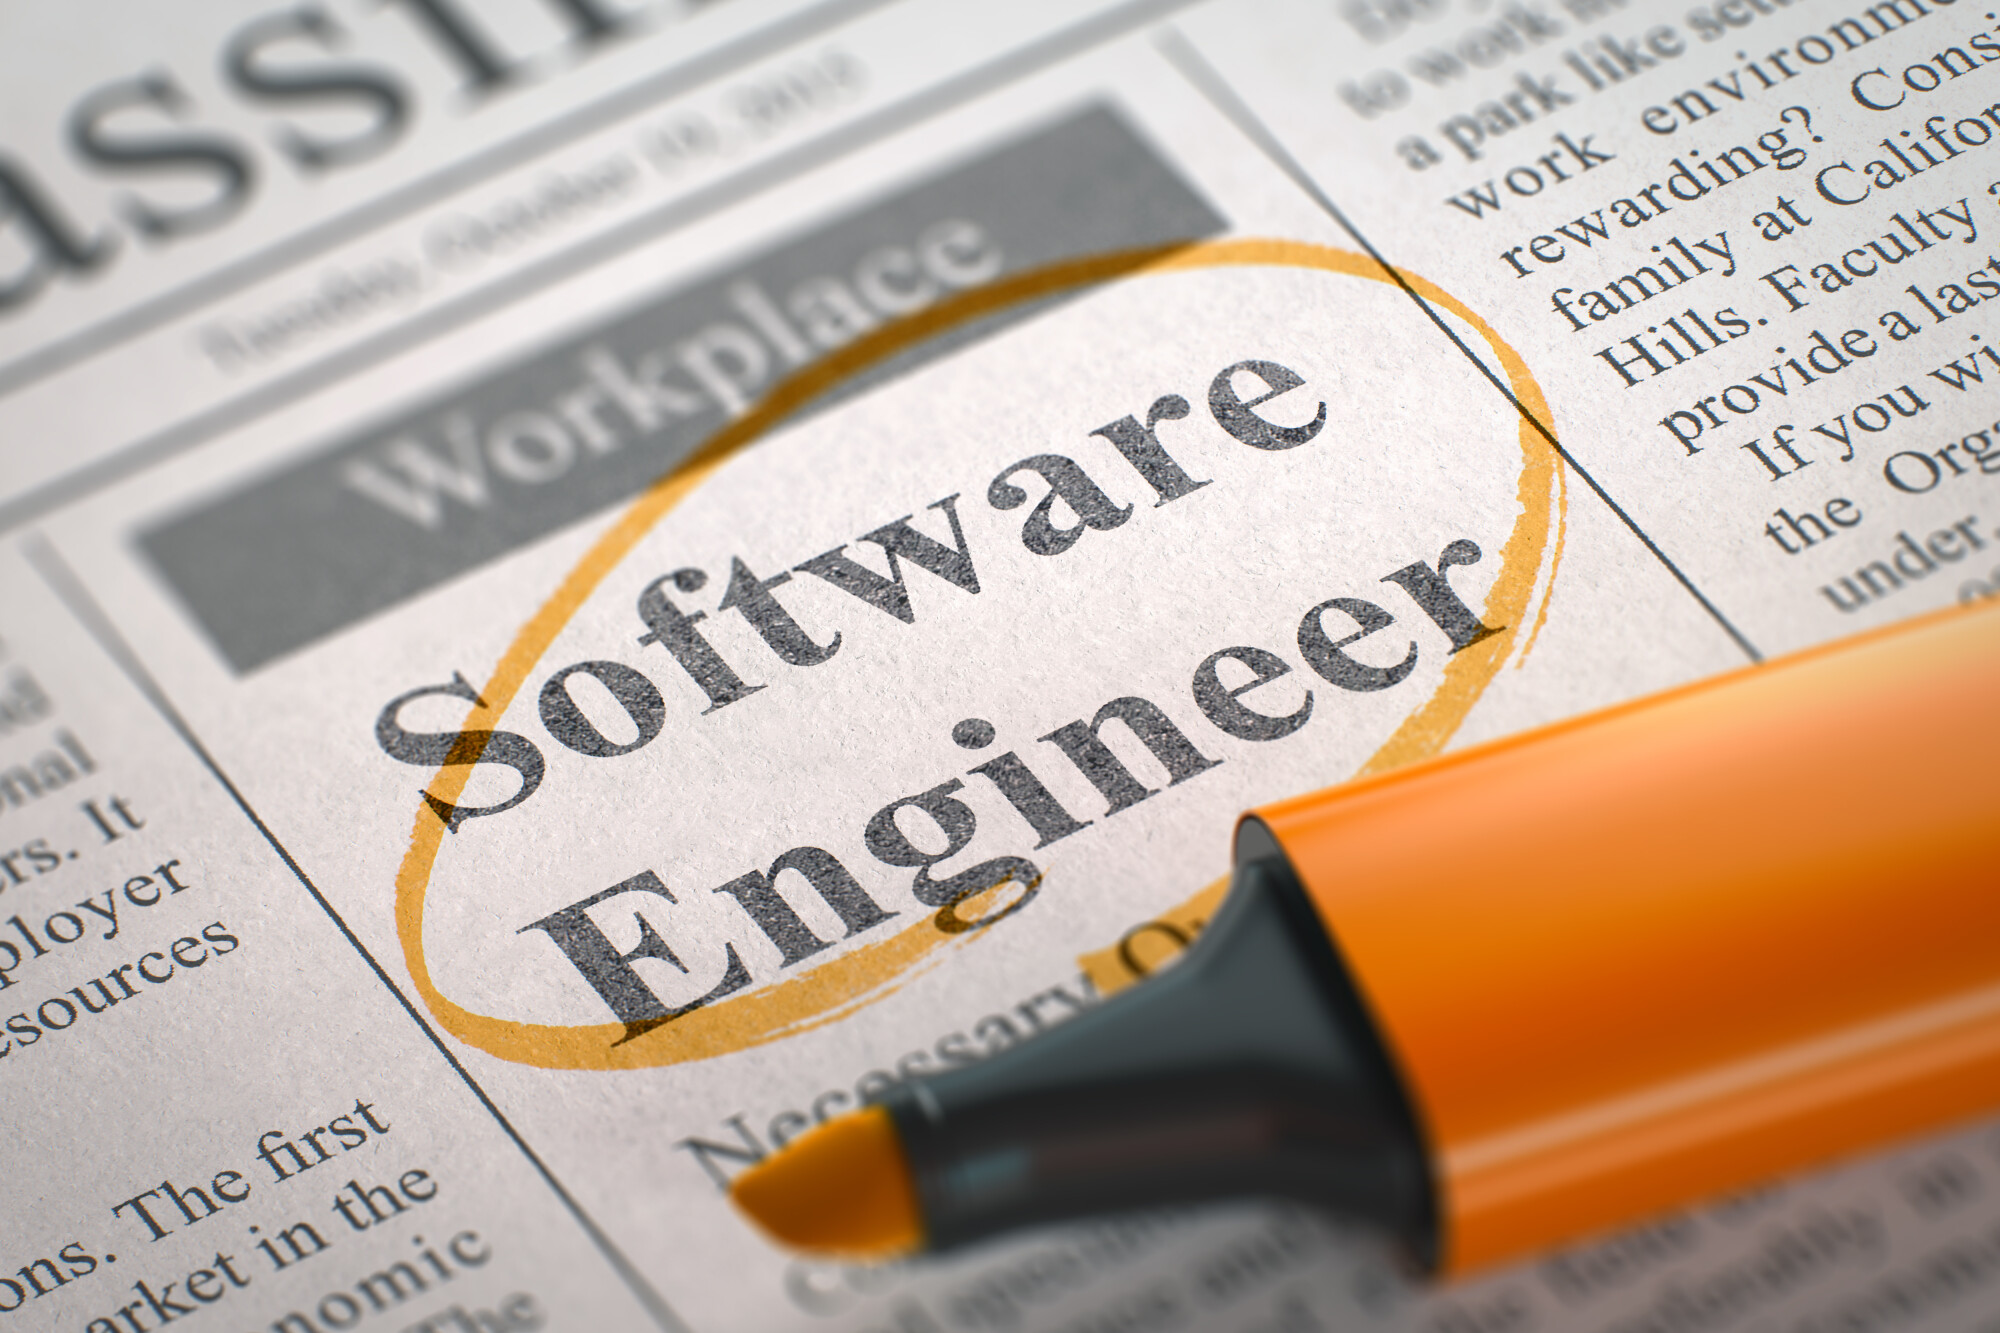 Software Engineer Skills